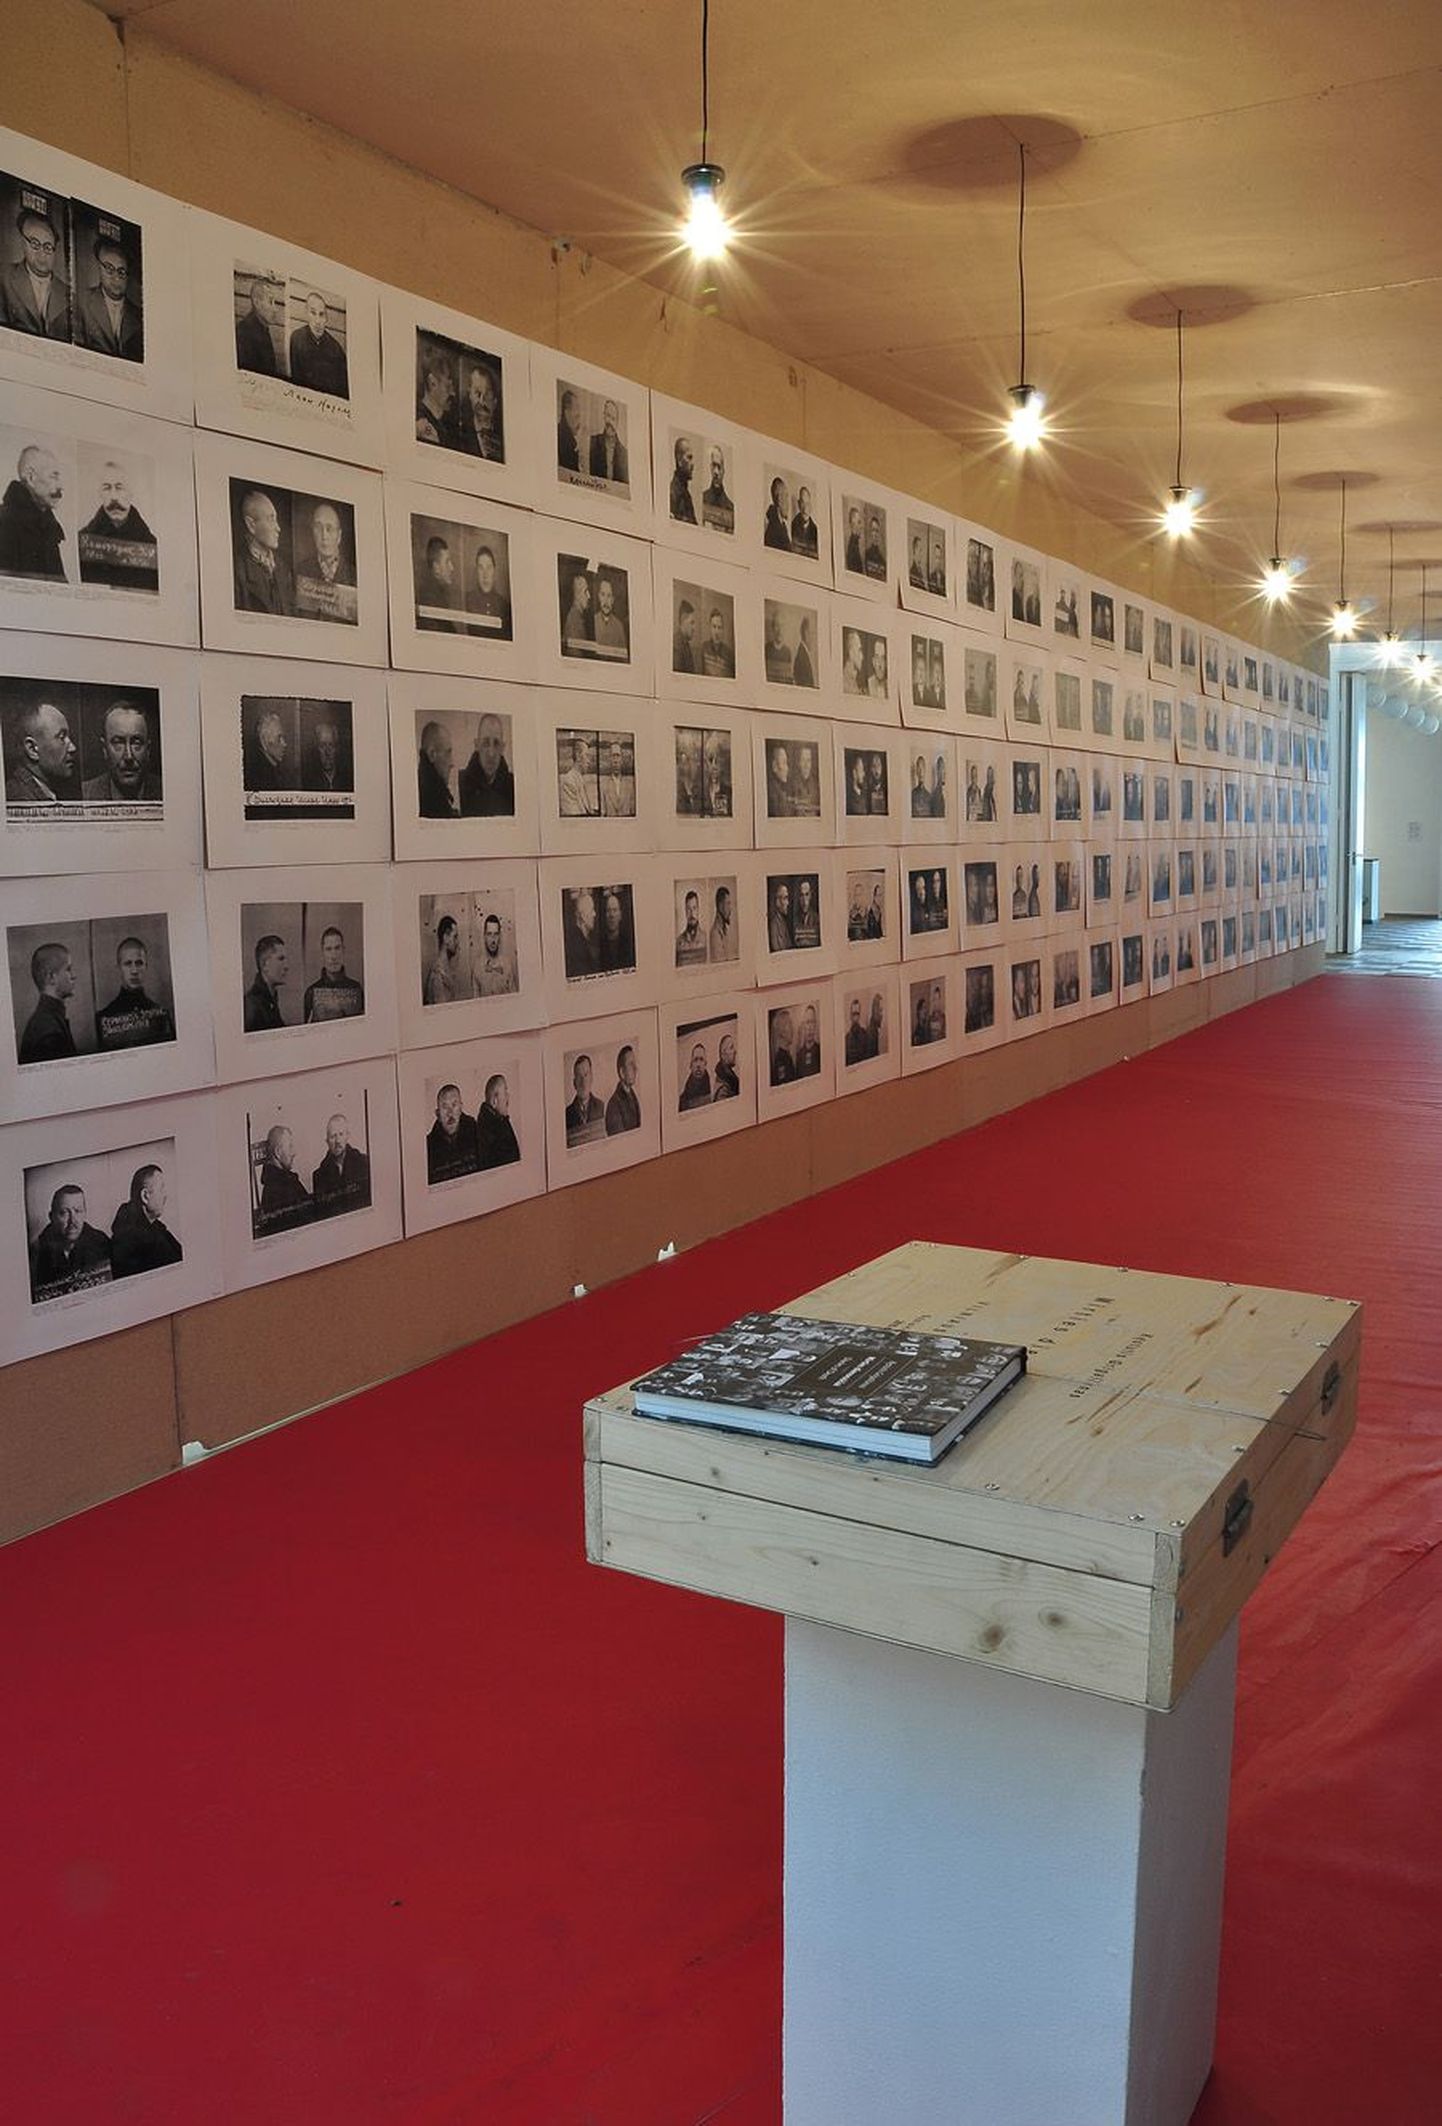 Eve Kase rahvusvaheline kuraatoriprojekt vaatab Ida-Euroopa monstroosse müüdi taha. Pildil on Leedu kunstniku Kestutis Grigaliunase fotogalerii «Surmapäevikud».